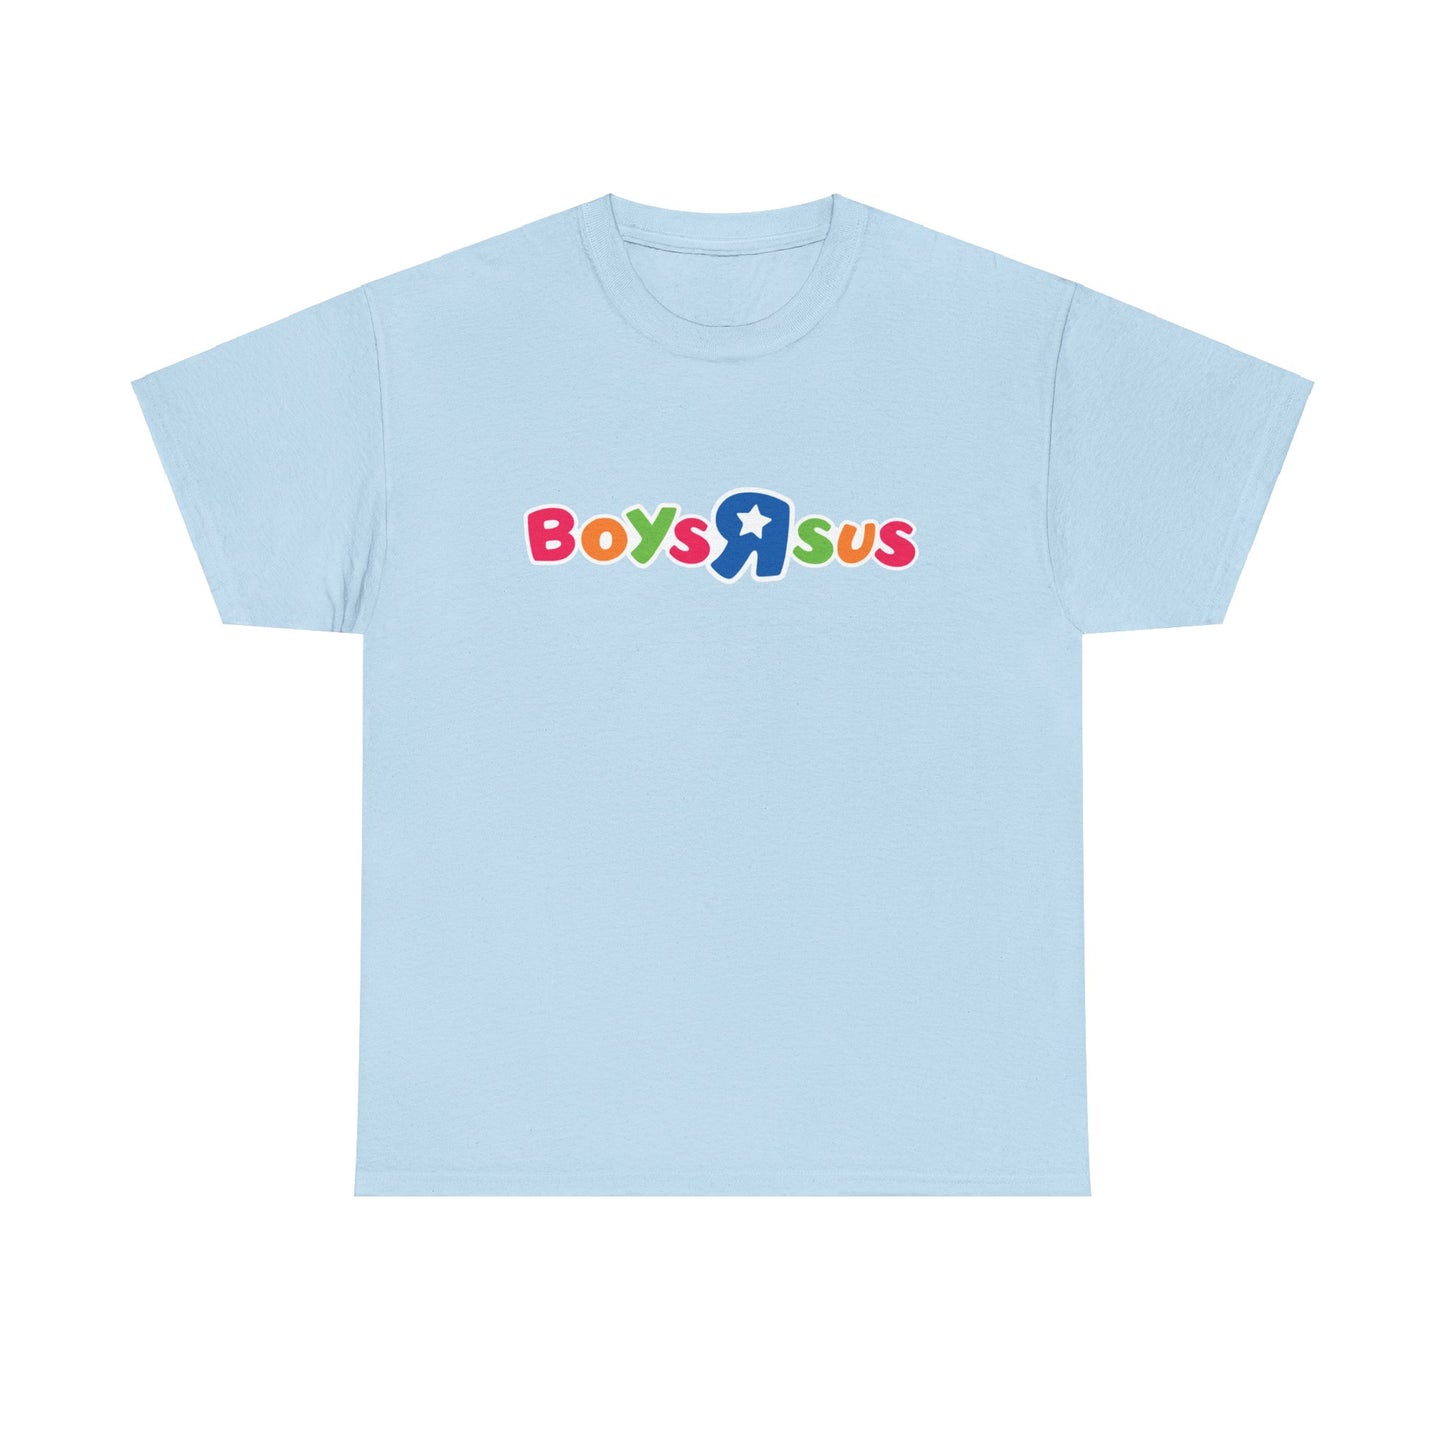 Holen Sie sich das Must-Have BoysRSus Pride Month Shirt! Dieses einzigartige Streetwear-Stück zeigt das kultische BoysRSus Logo, inspiriert von ToysRUs, in einer bunten Pride-Version. Ein Statement für die LGBTQ+ Community.